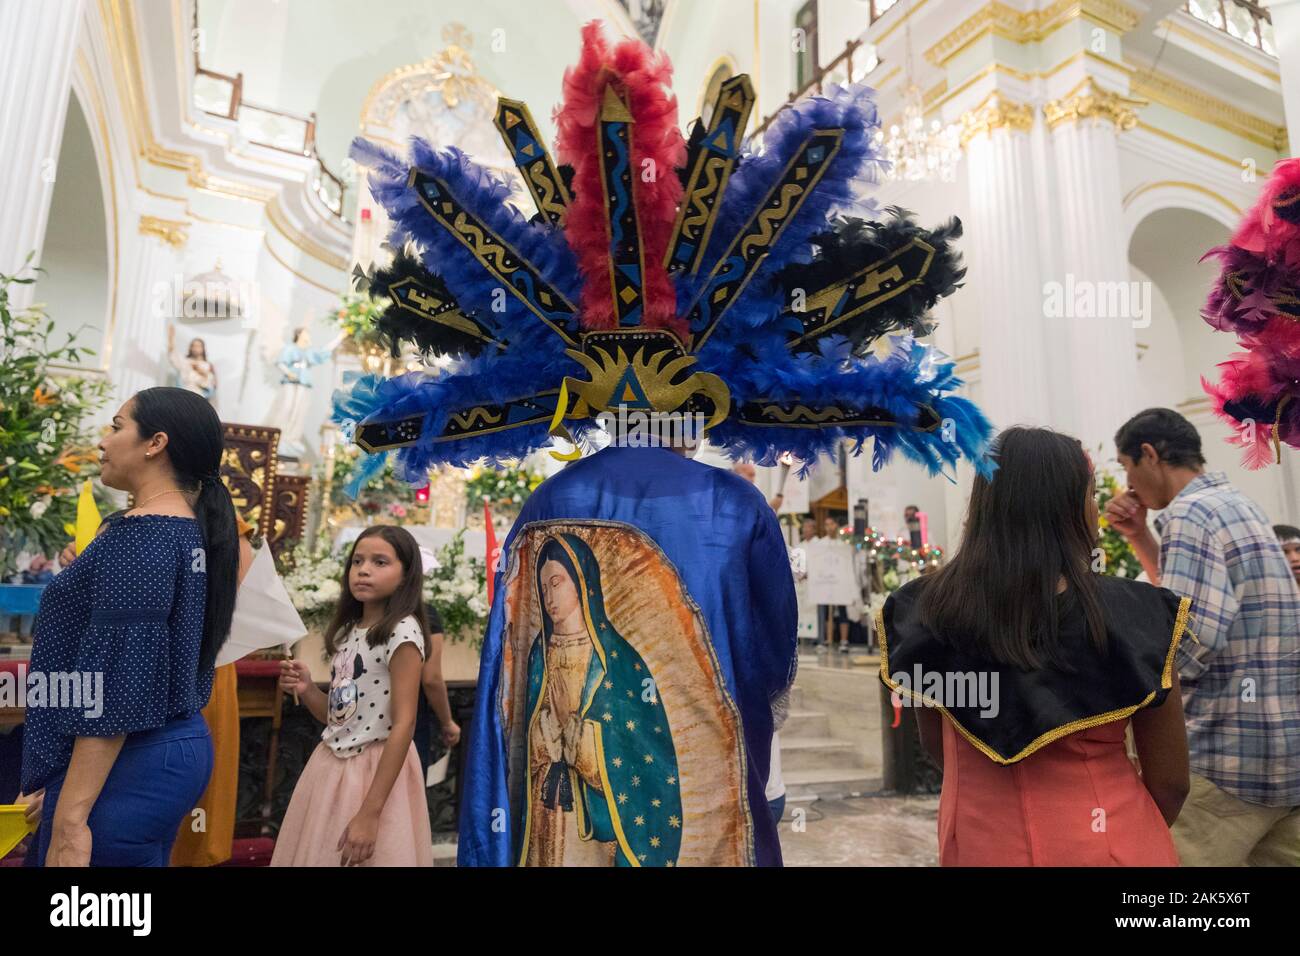 Fête de Notre Dame de Guadalupe, participant autochtone dans une tenue colorée Banque D'Images